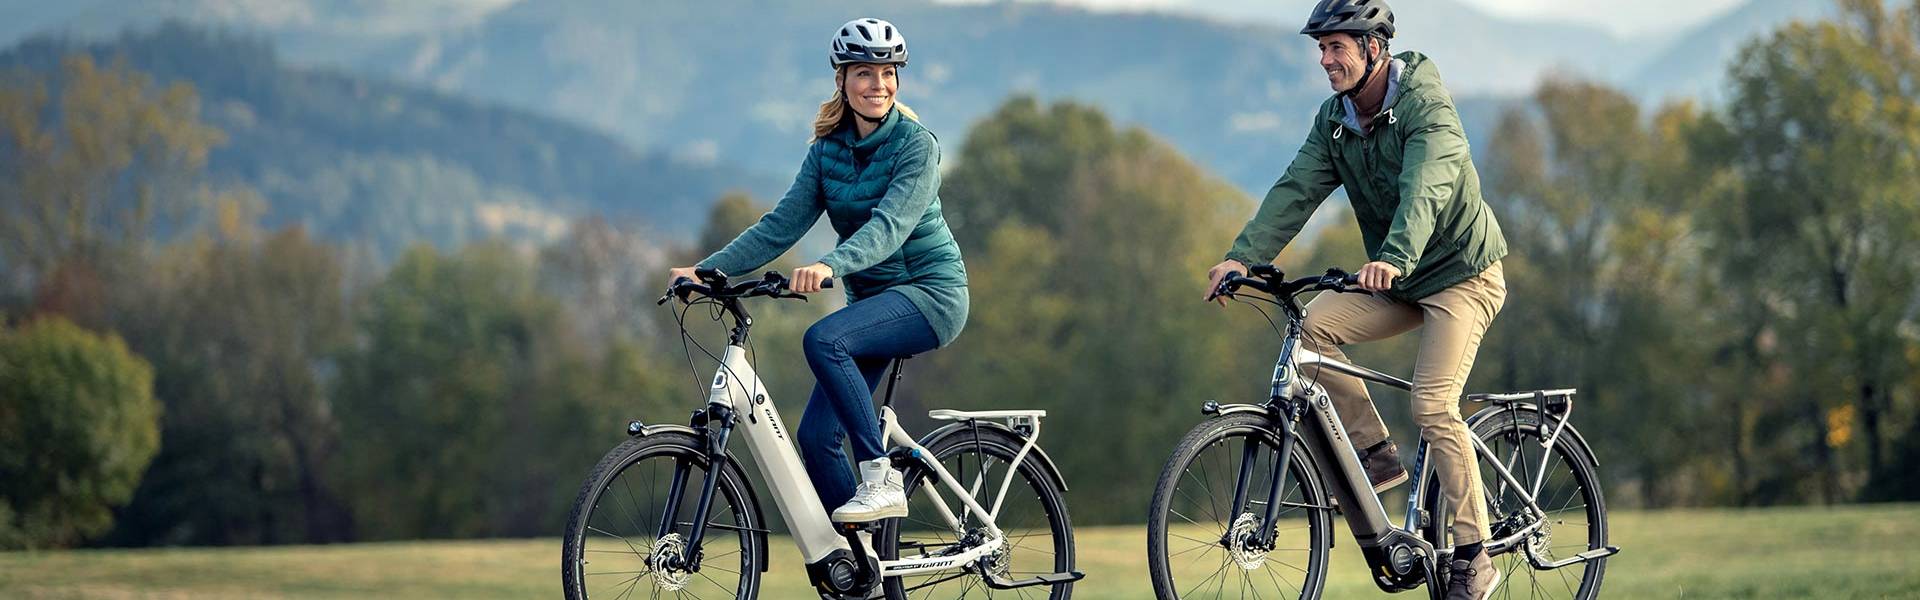 Toer | Shop Trekking & Adventure Elektrische fietsen | Giant Bicycles Nederland